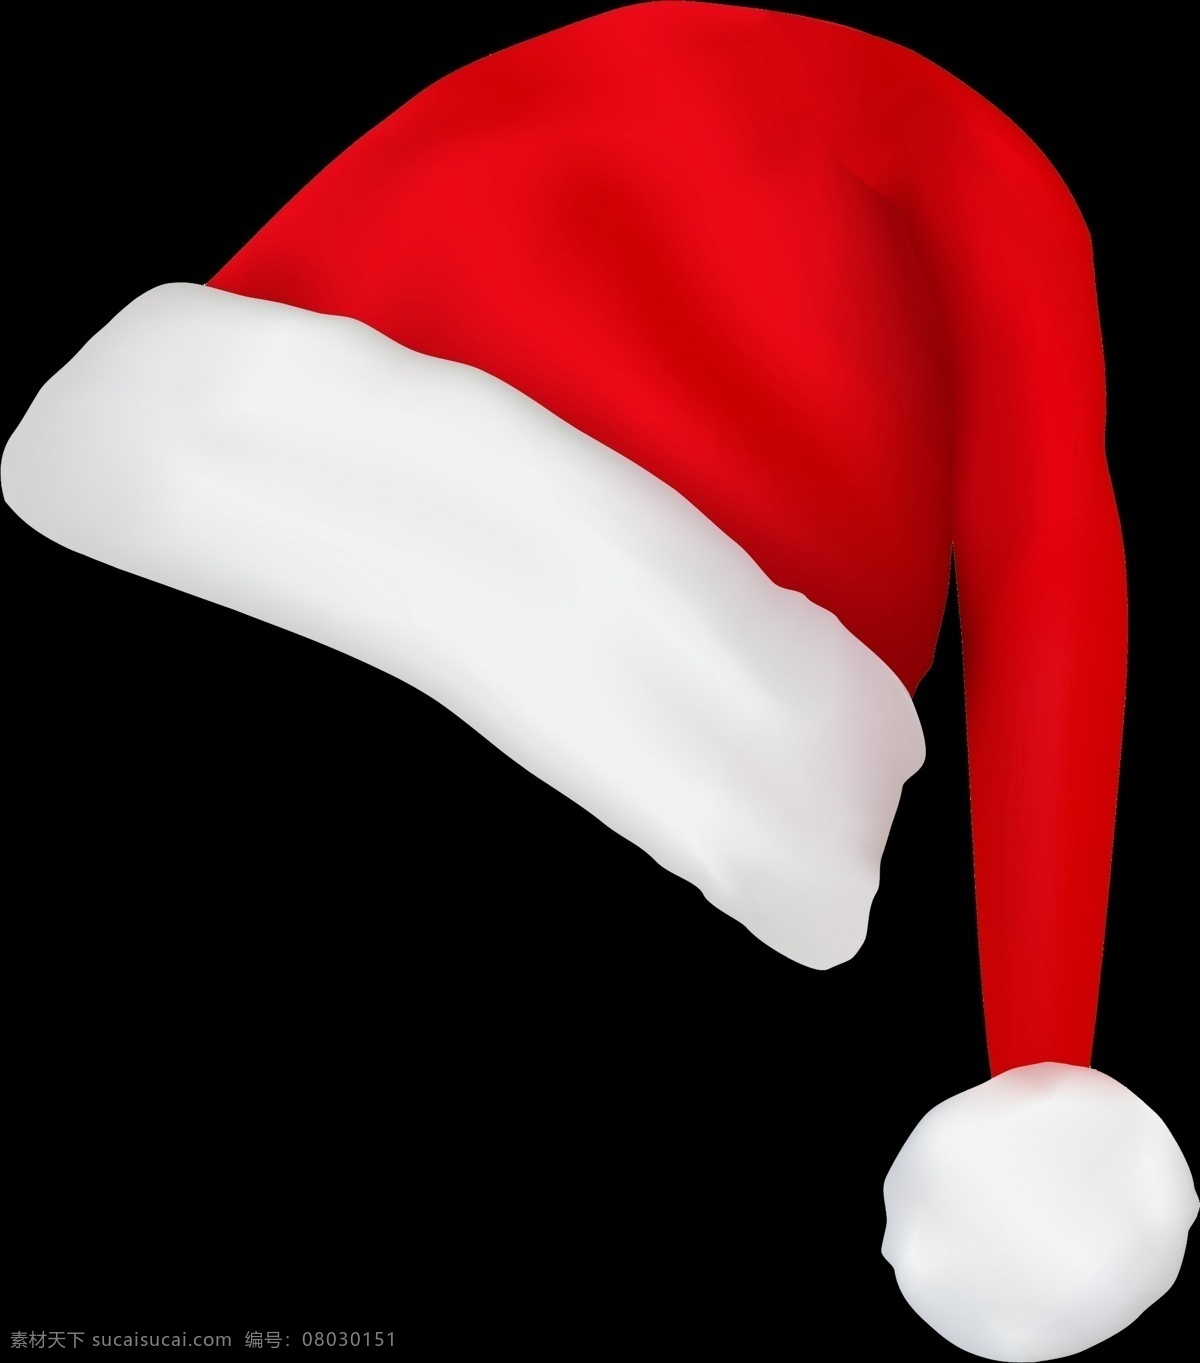 圣诞节素材 帽子 冬天 矢量图圣诞帽 卡通圣诞帽 手绘圣诞帽 动画 游戏 角色 圣诞节海报 圣诞节宣传图 节日爱情喜庆 文化艺术 节日庆祝